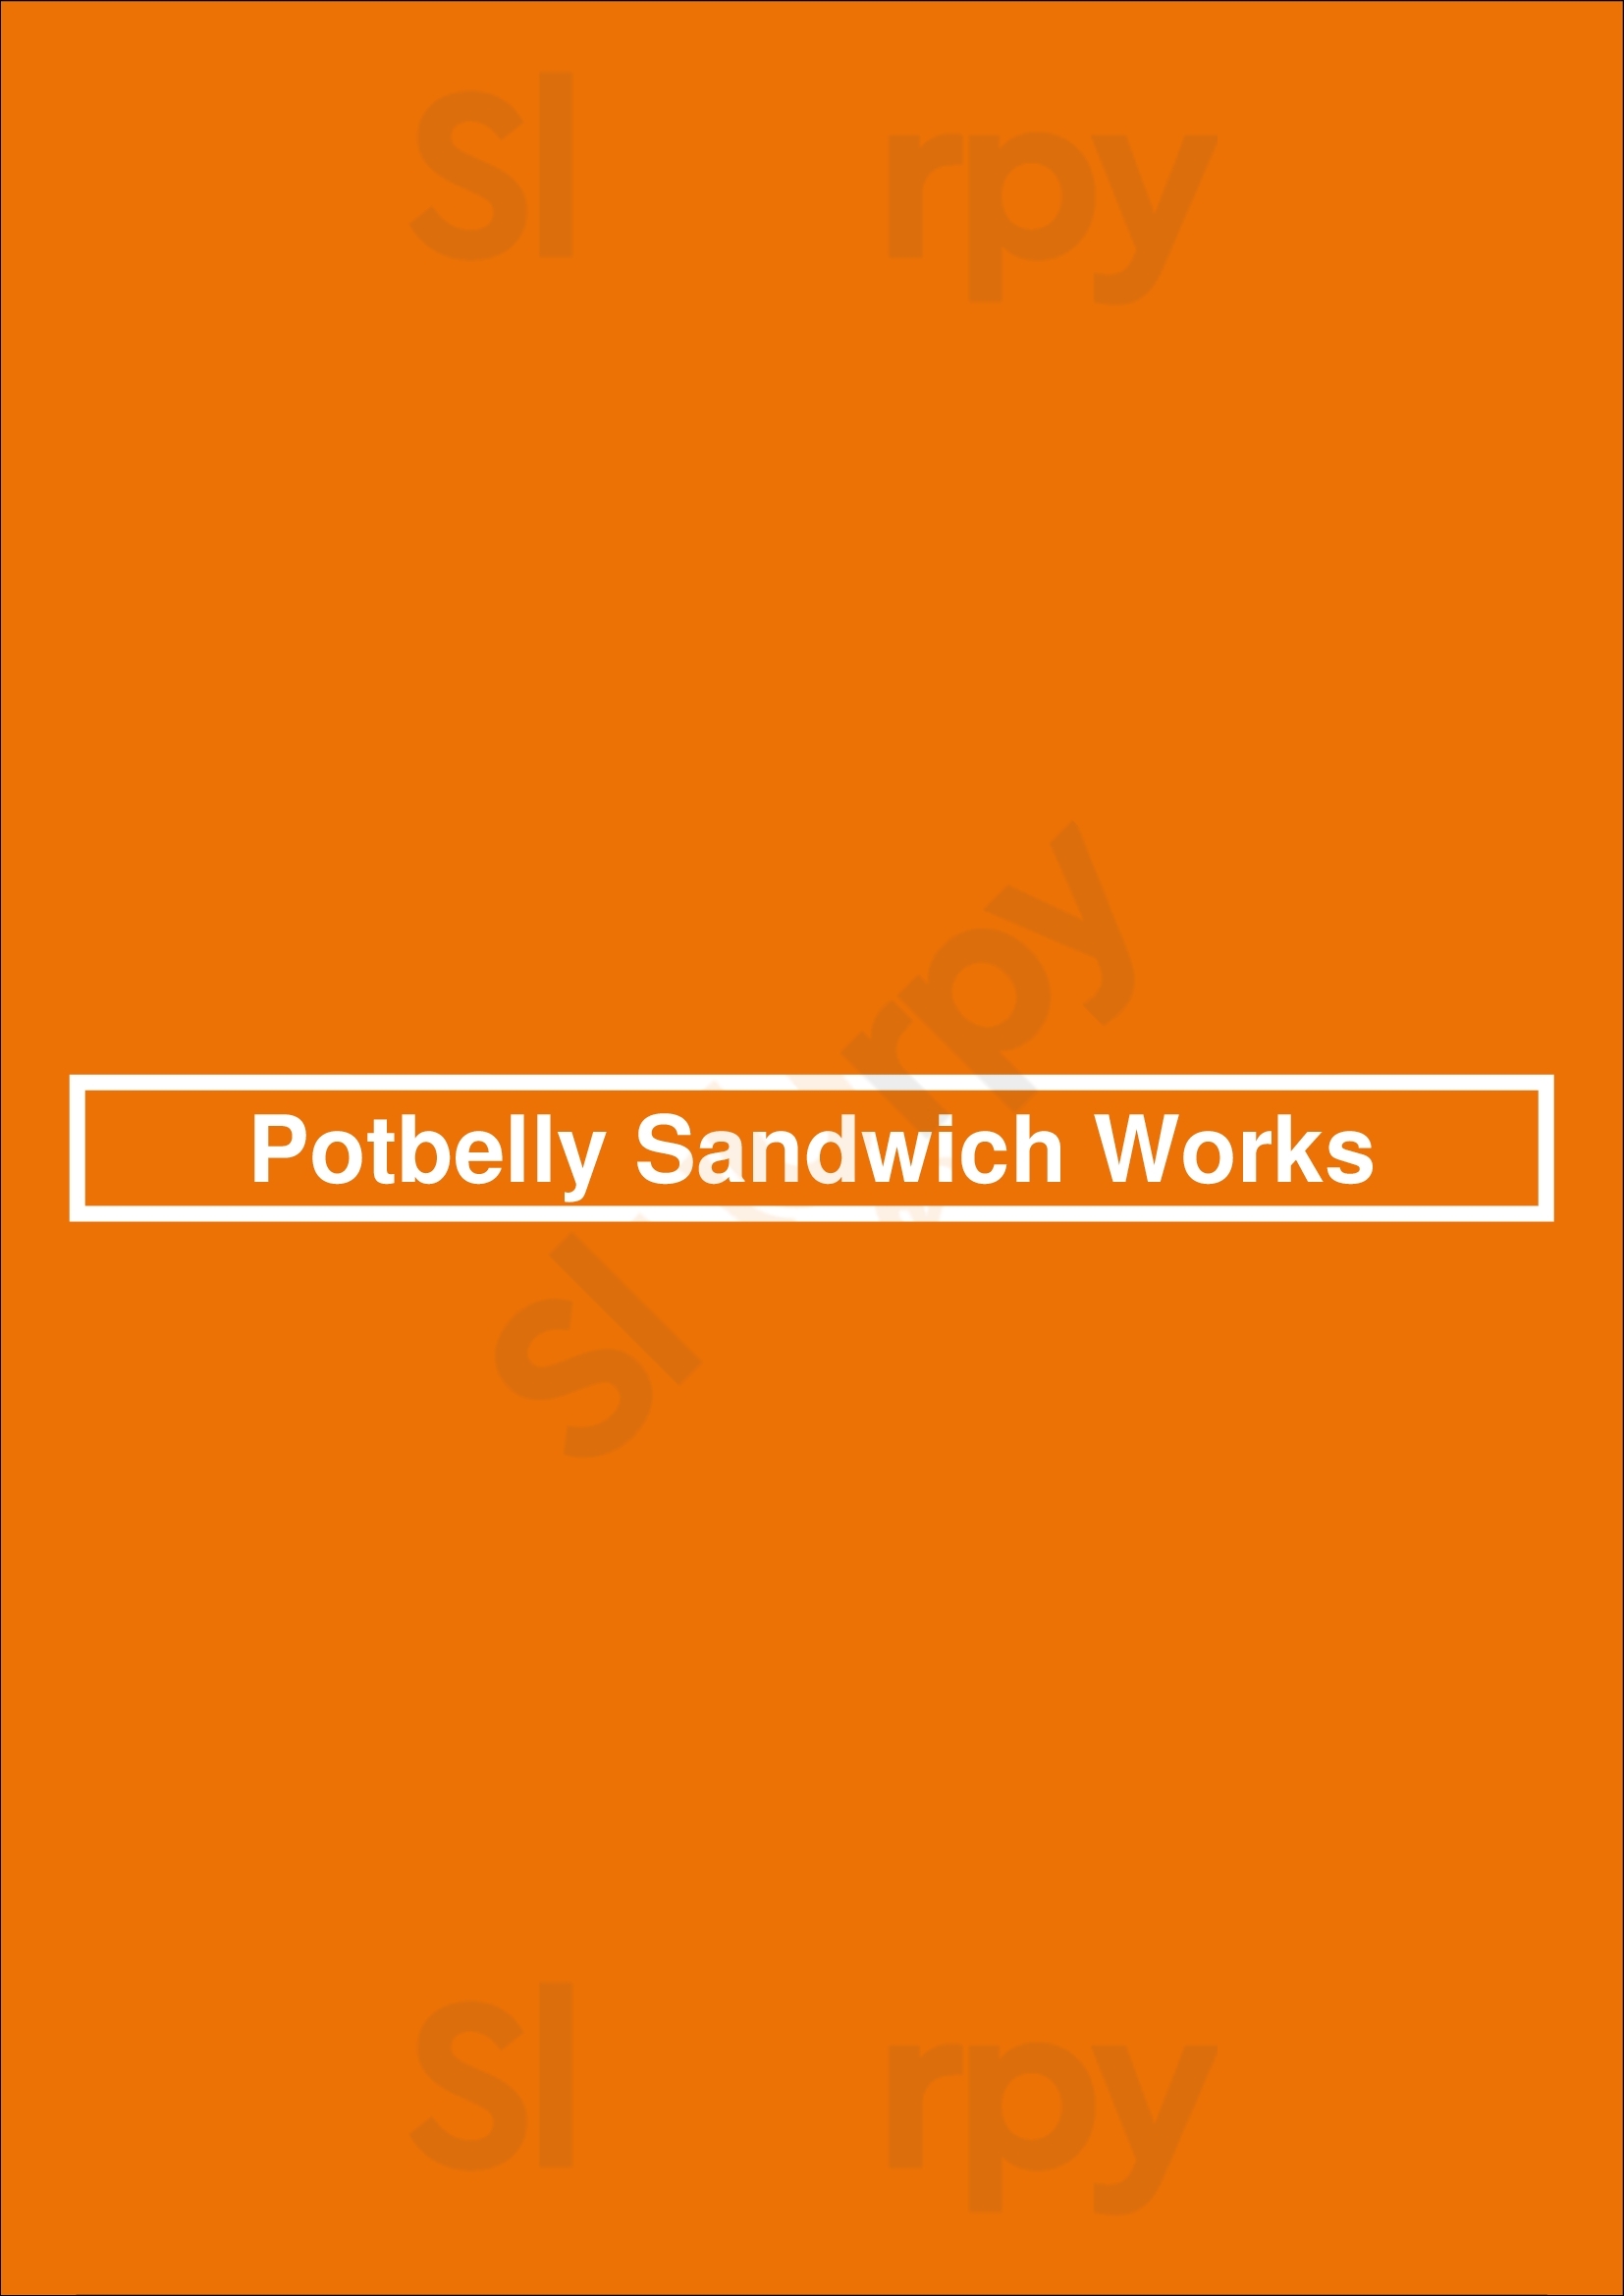 Potbelly Sandwich Shop Gainesville Menu - 1